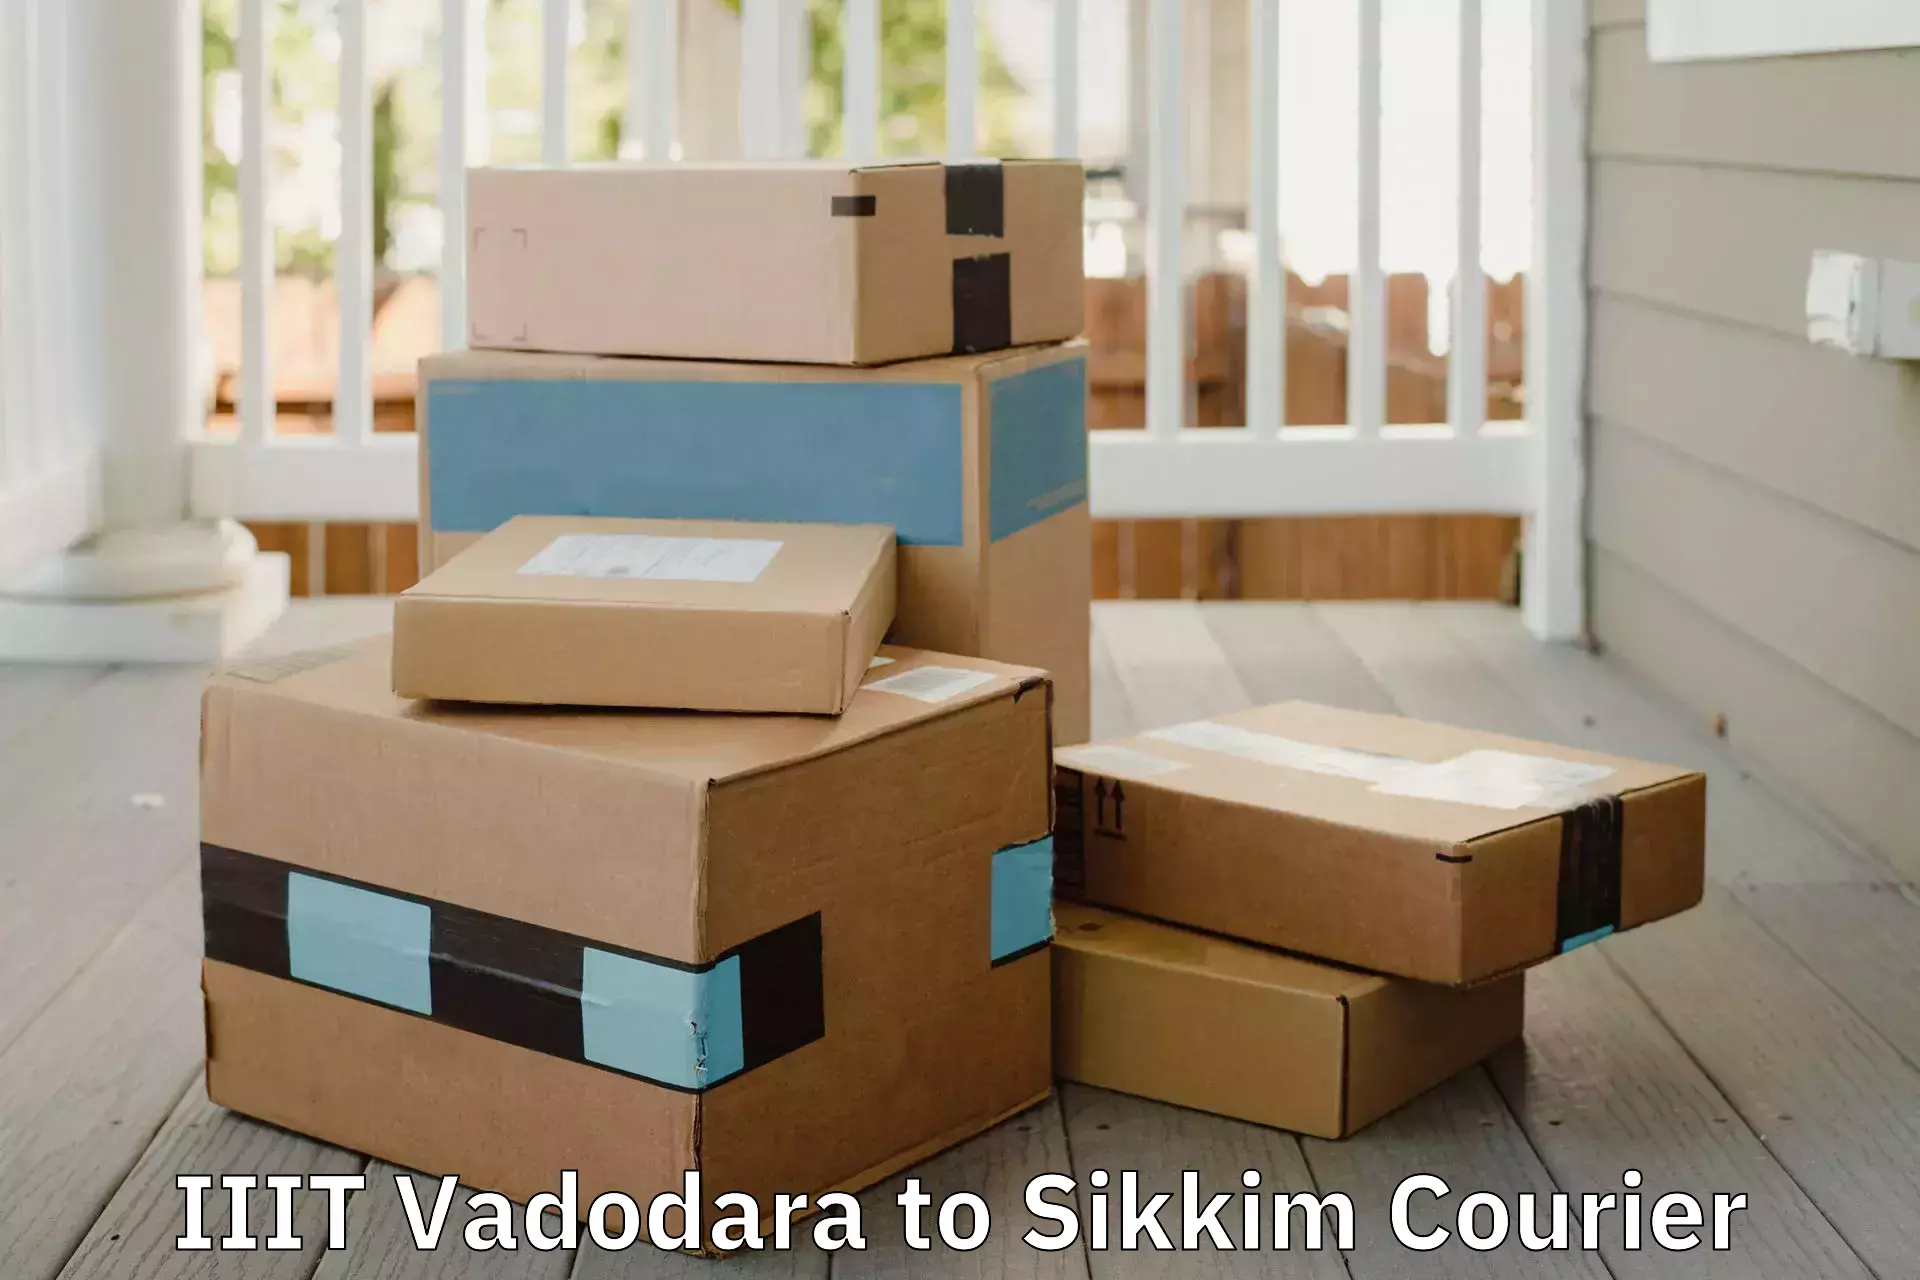 Furniture transport professionals IIIT Vadodara to East Sikkim